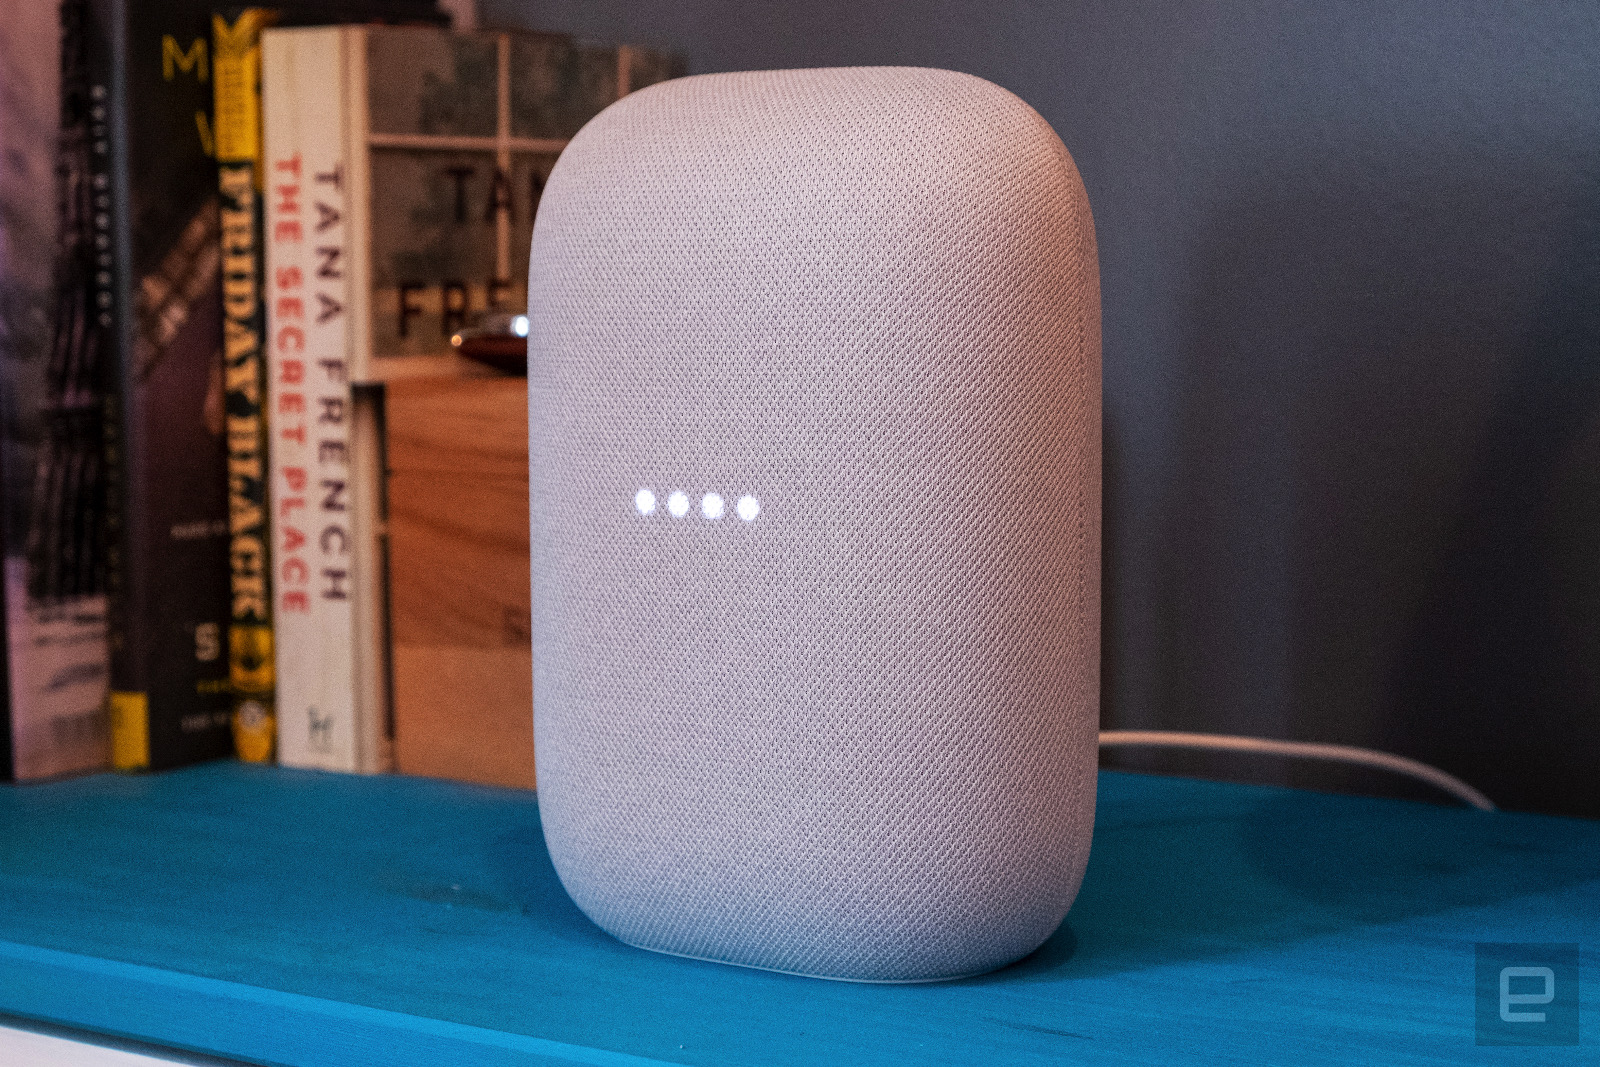 يمكن لـ Google Home الآن استخدام مكبرات صوت Nest لاكتشاف وجودك